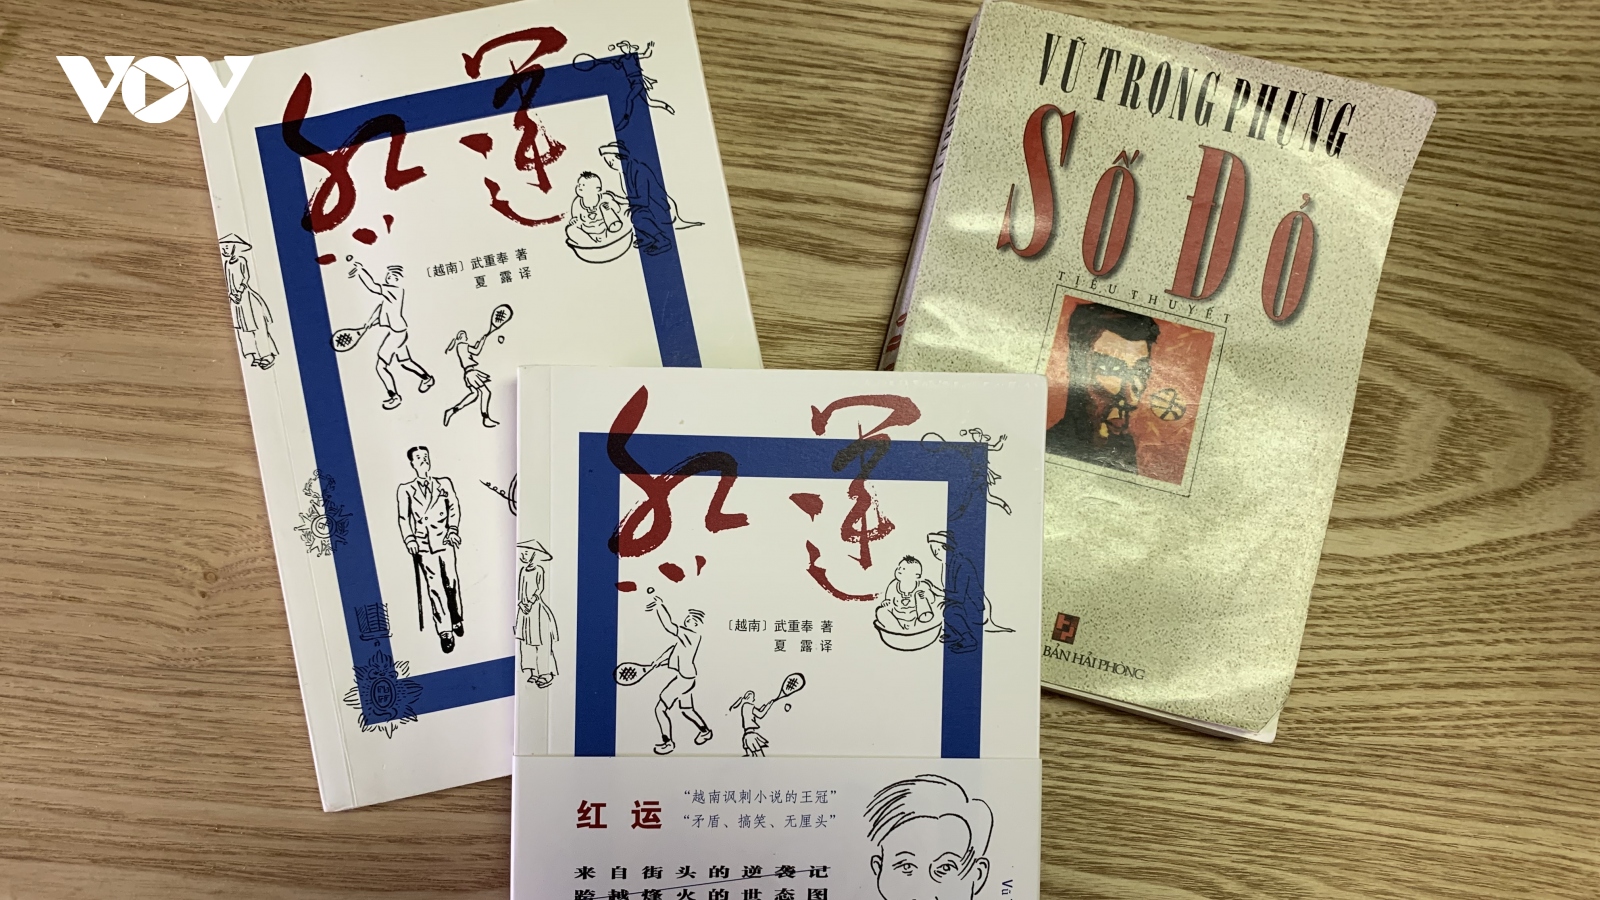 Tiểu thuyết “Số đỏ” lần đầu xuất bản tại Trung Quốc